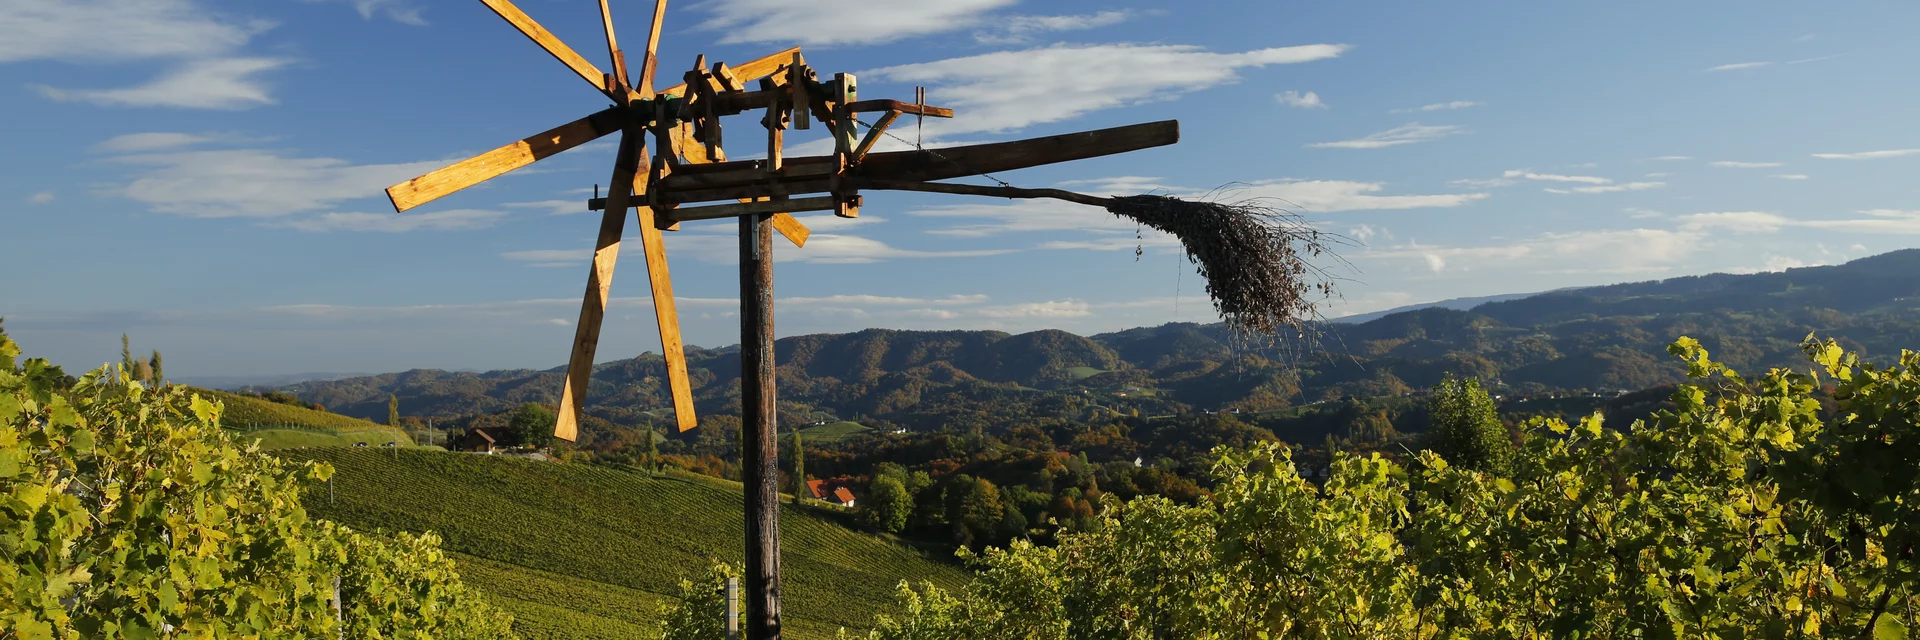 Klapotetz, das Wahrzeichen des steirischen Weinlandes  | © STG | Herbert Raffalt